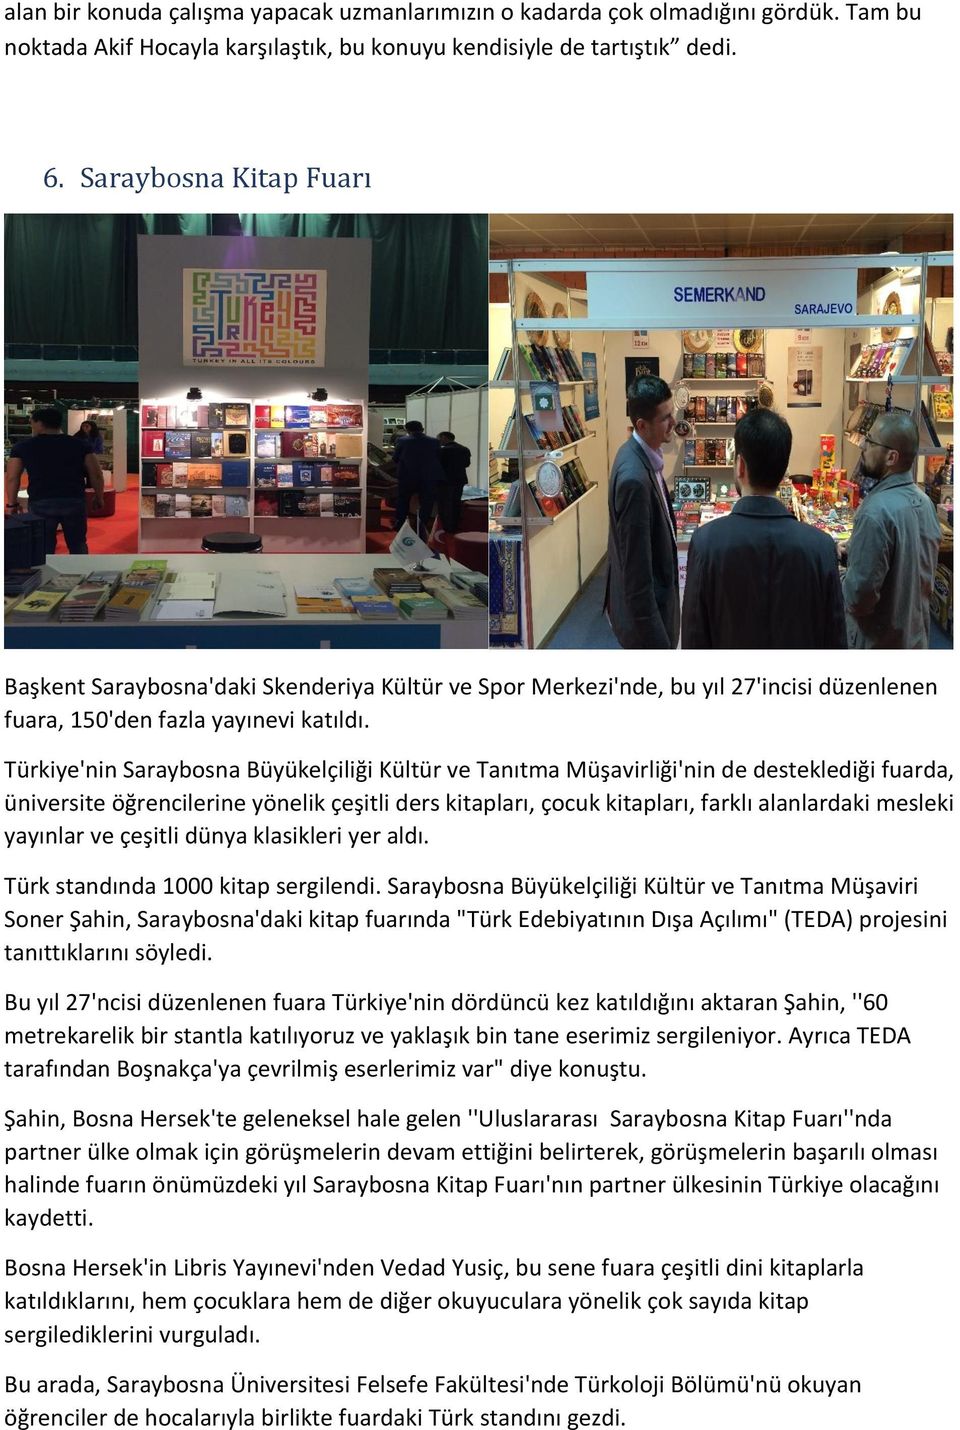 Türkiye'nin Saraybosna Büyükelçiliği Kültür ve Tanıtma Müşavirliği'nin de desteklediği fuarda, üniversite öğrencilerine yönelik çeşitli ders kitapları, çocuk kitapları, farklı alanlardaki mesleki